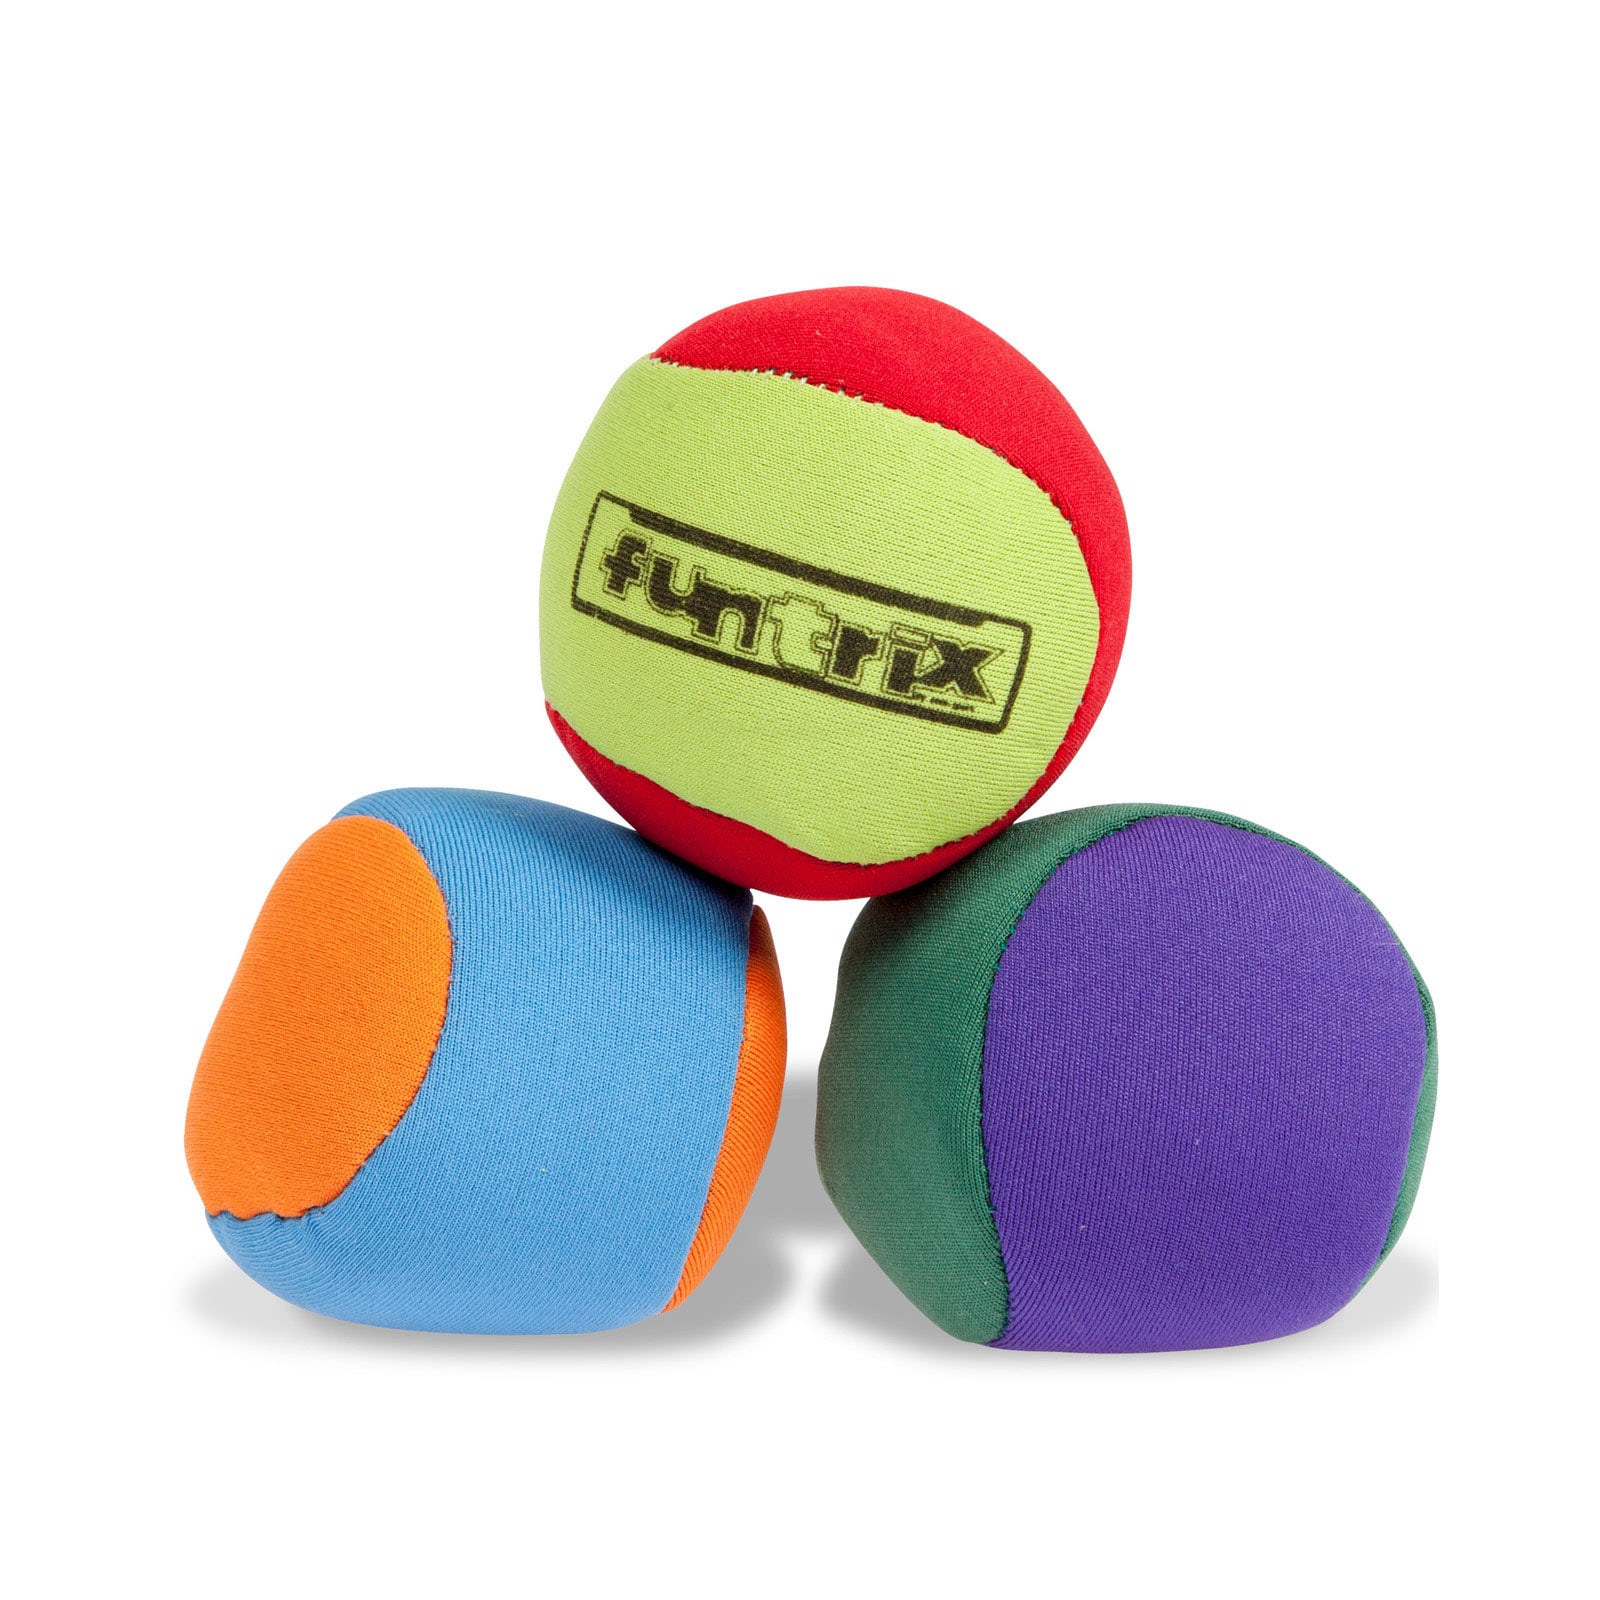 3 Balles de jonglage 6 cm standard pour jongler colorées pas cher